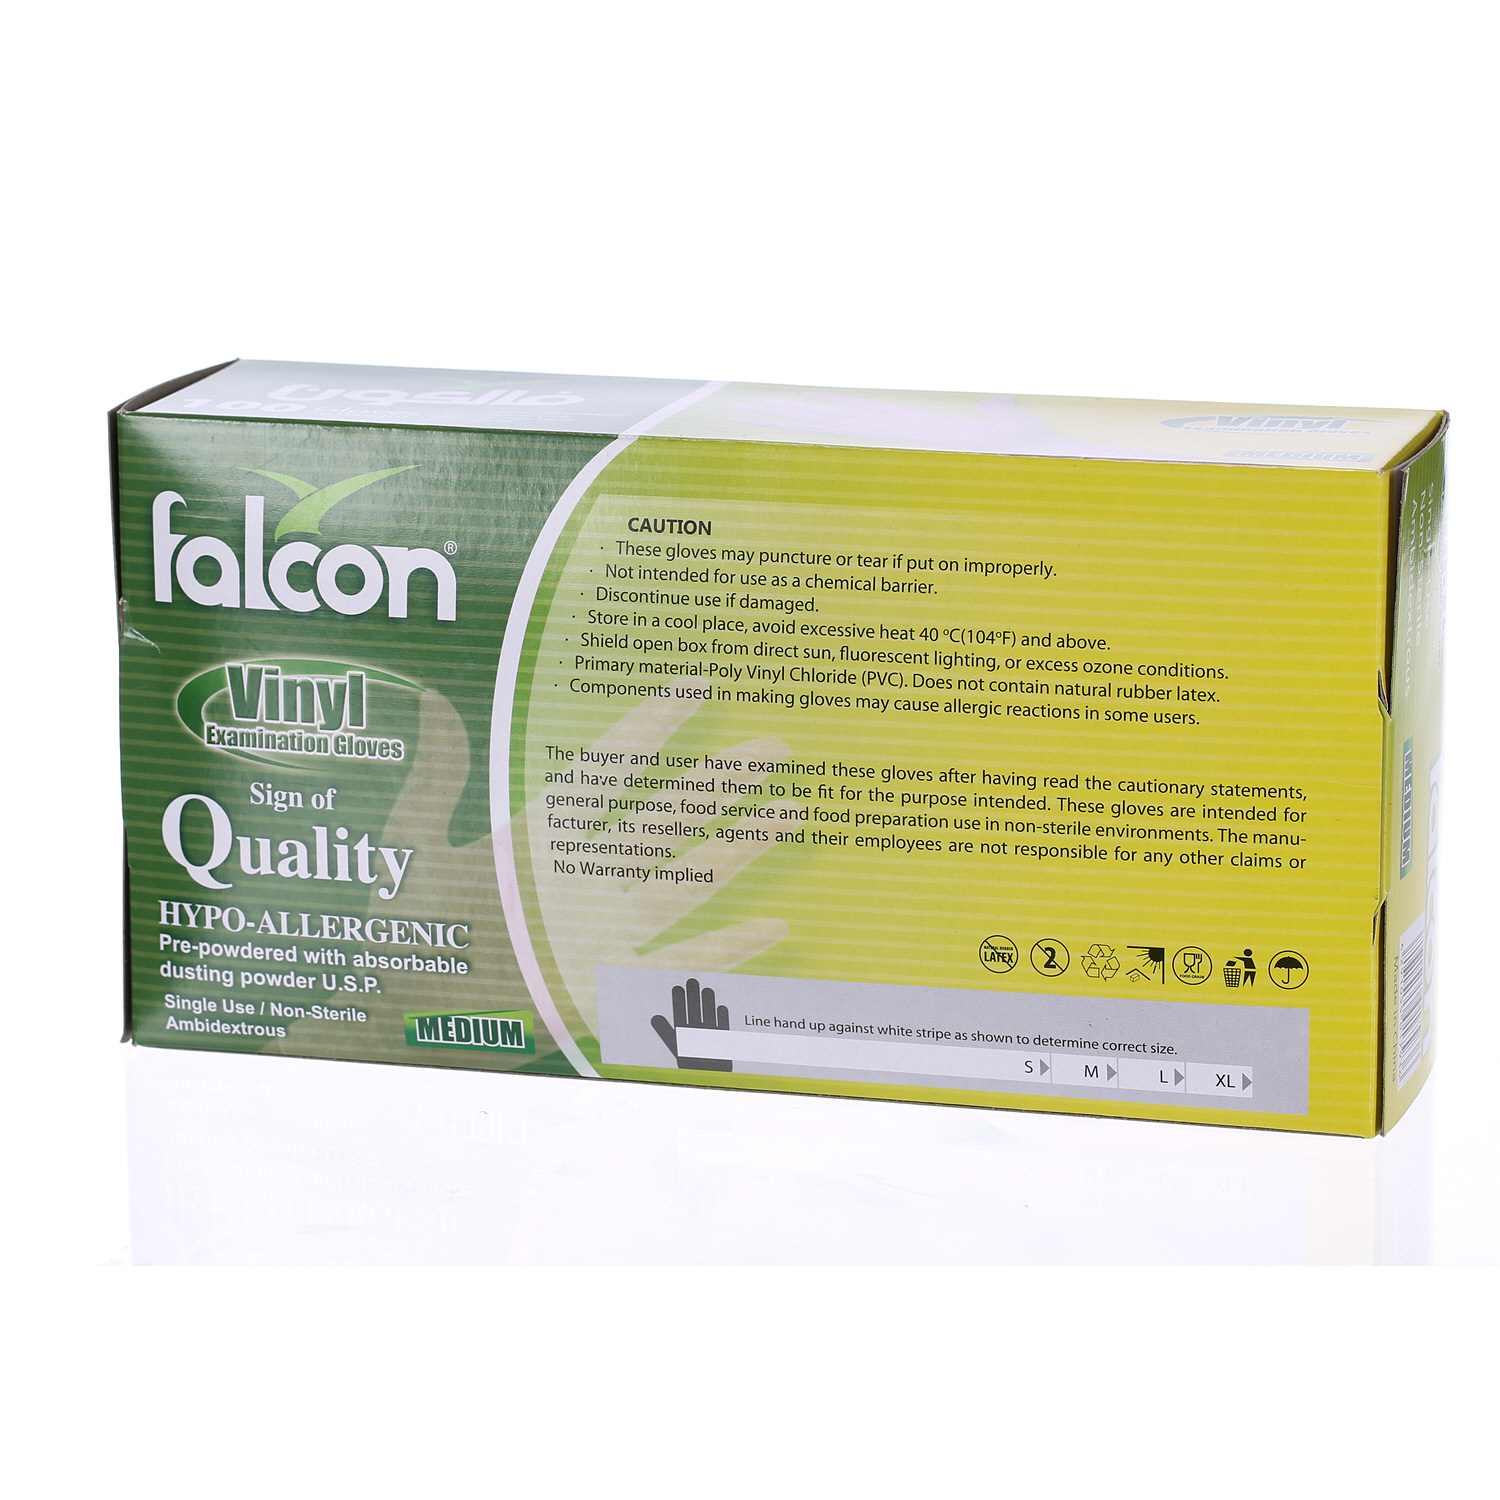 Falcon Vinyl Gloves Medium 100 Pack